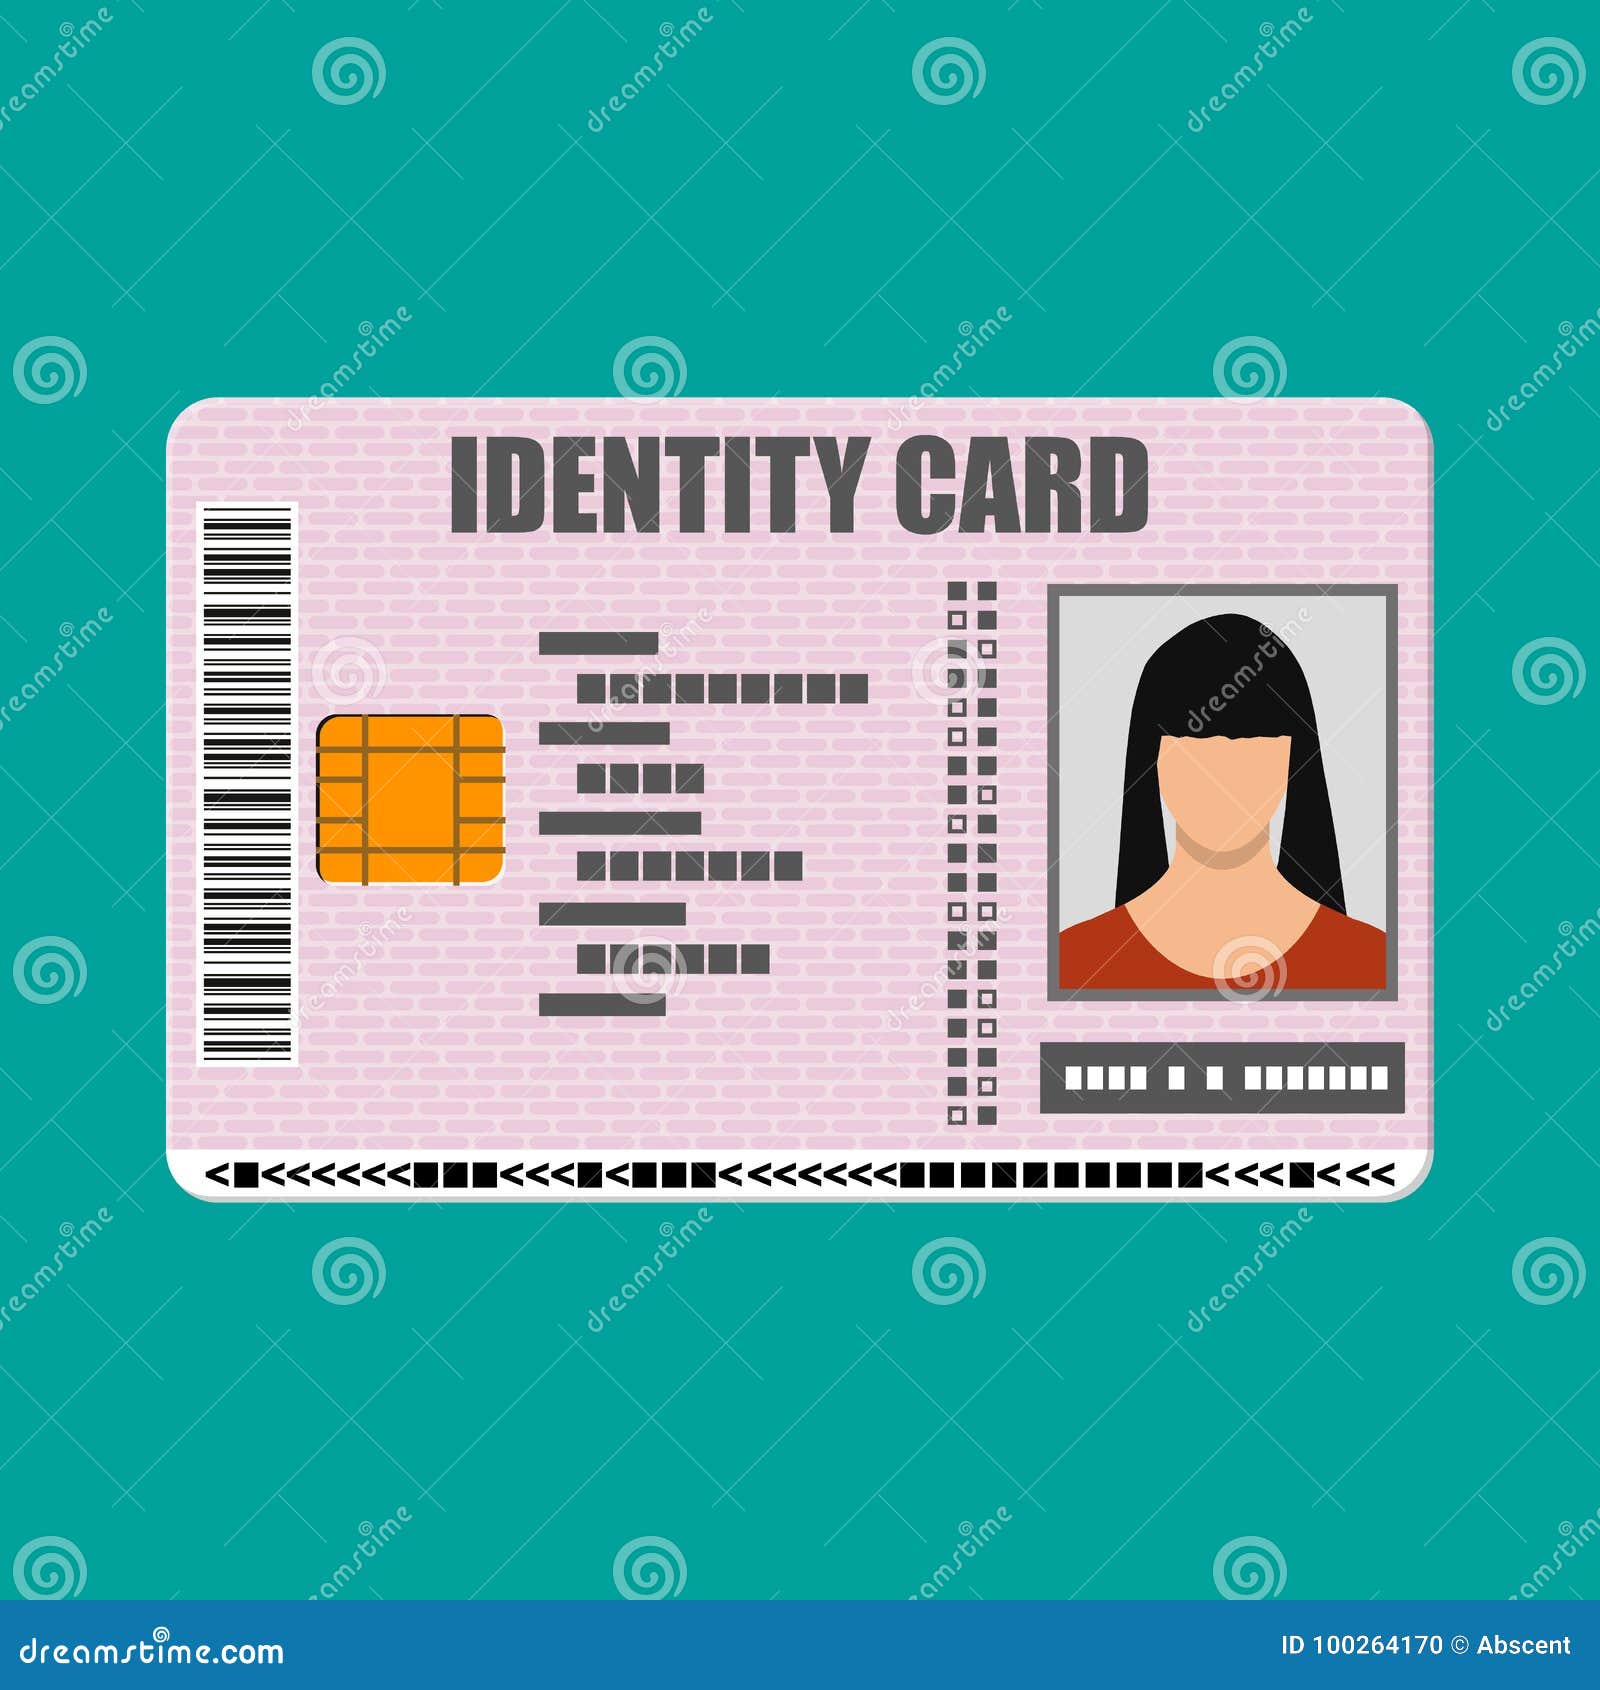 id card icon. identity card, national id card